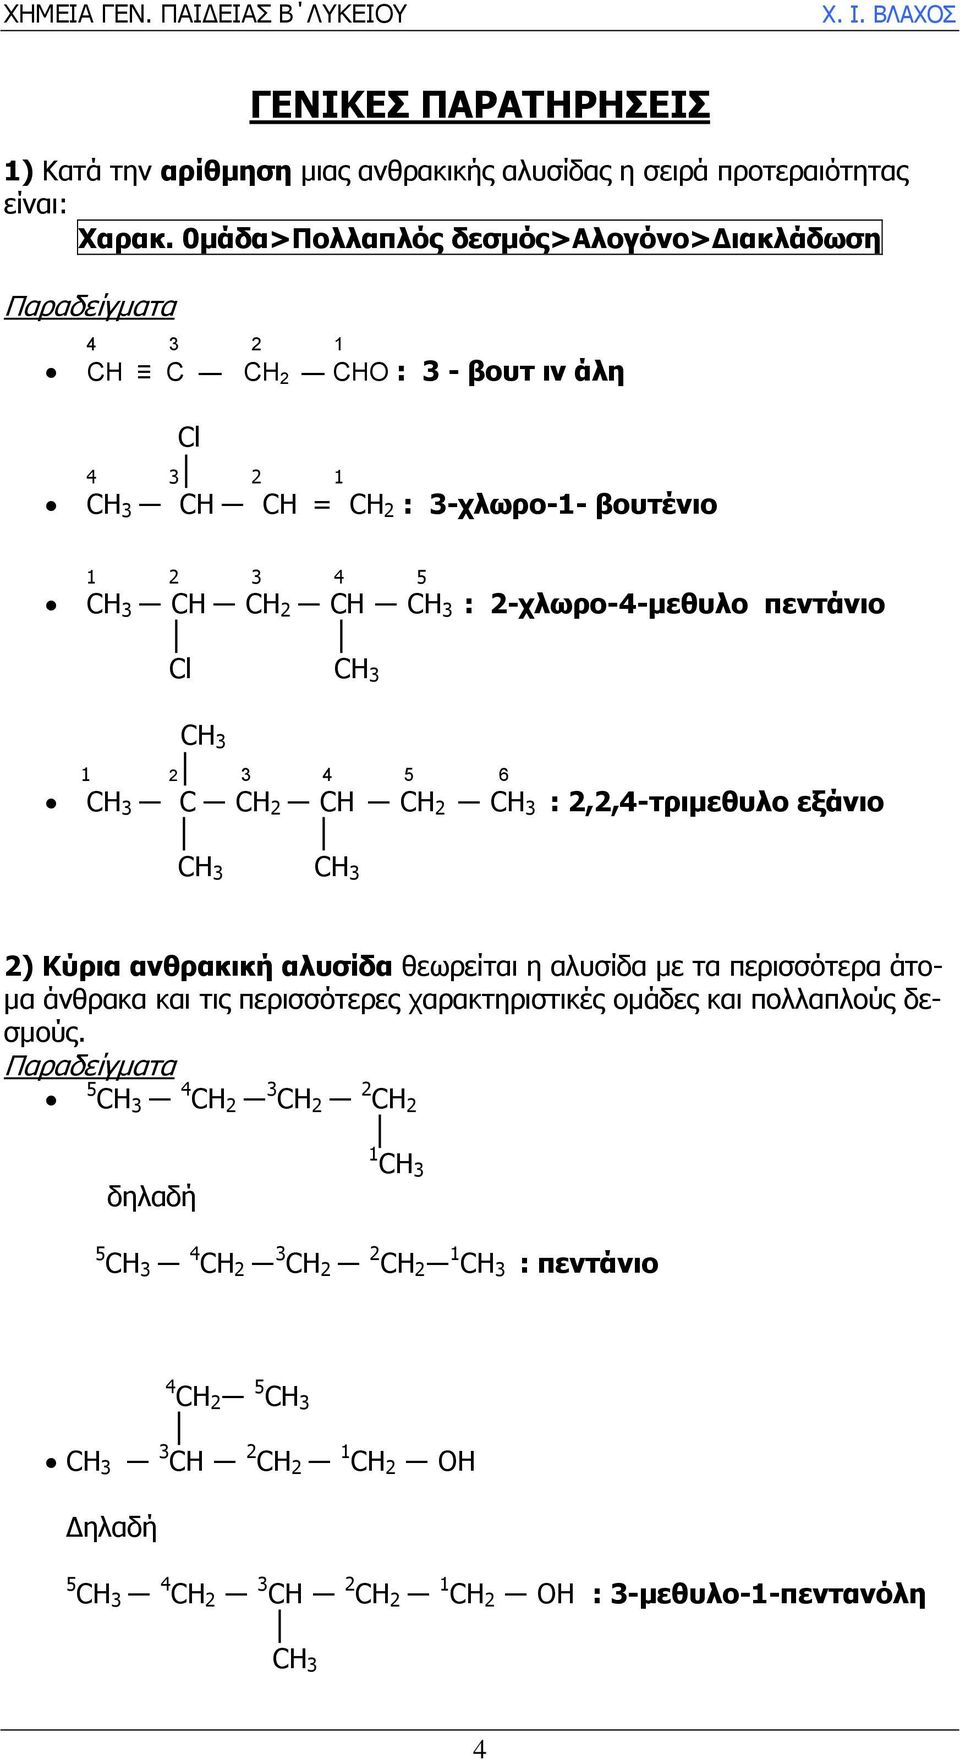 πεντάνιο Cl 1 2 3 4 5 6 C CΗ 2 CΗ CΗ 2 : 2,2,4-τριµεθυλο εξάνιο 2) Κύρια ανθρακική αλυσίδα θεωρείται η αλυσίδα µε τα περισσότερα άτο- µα άνθρακα και τις